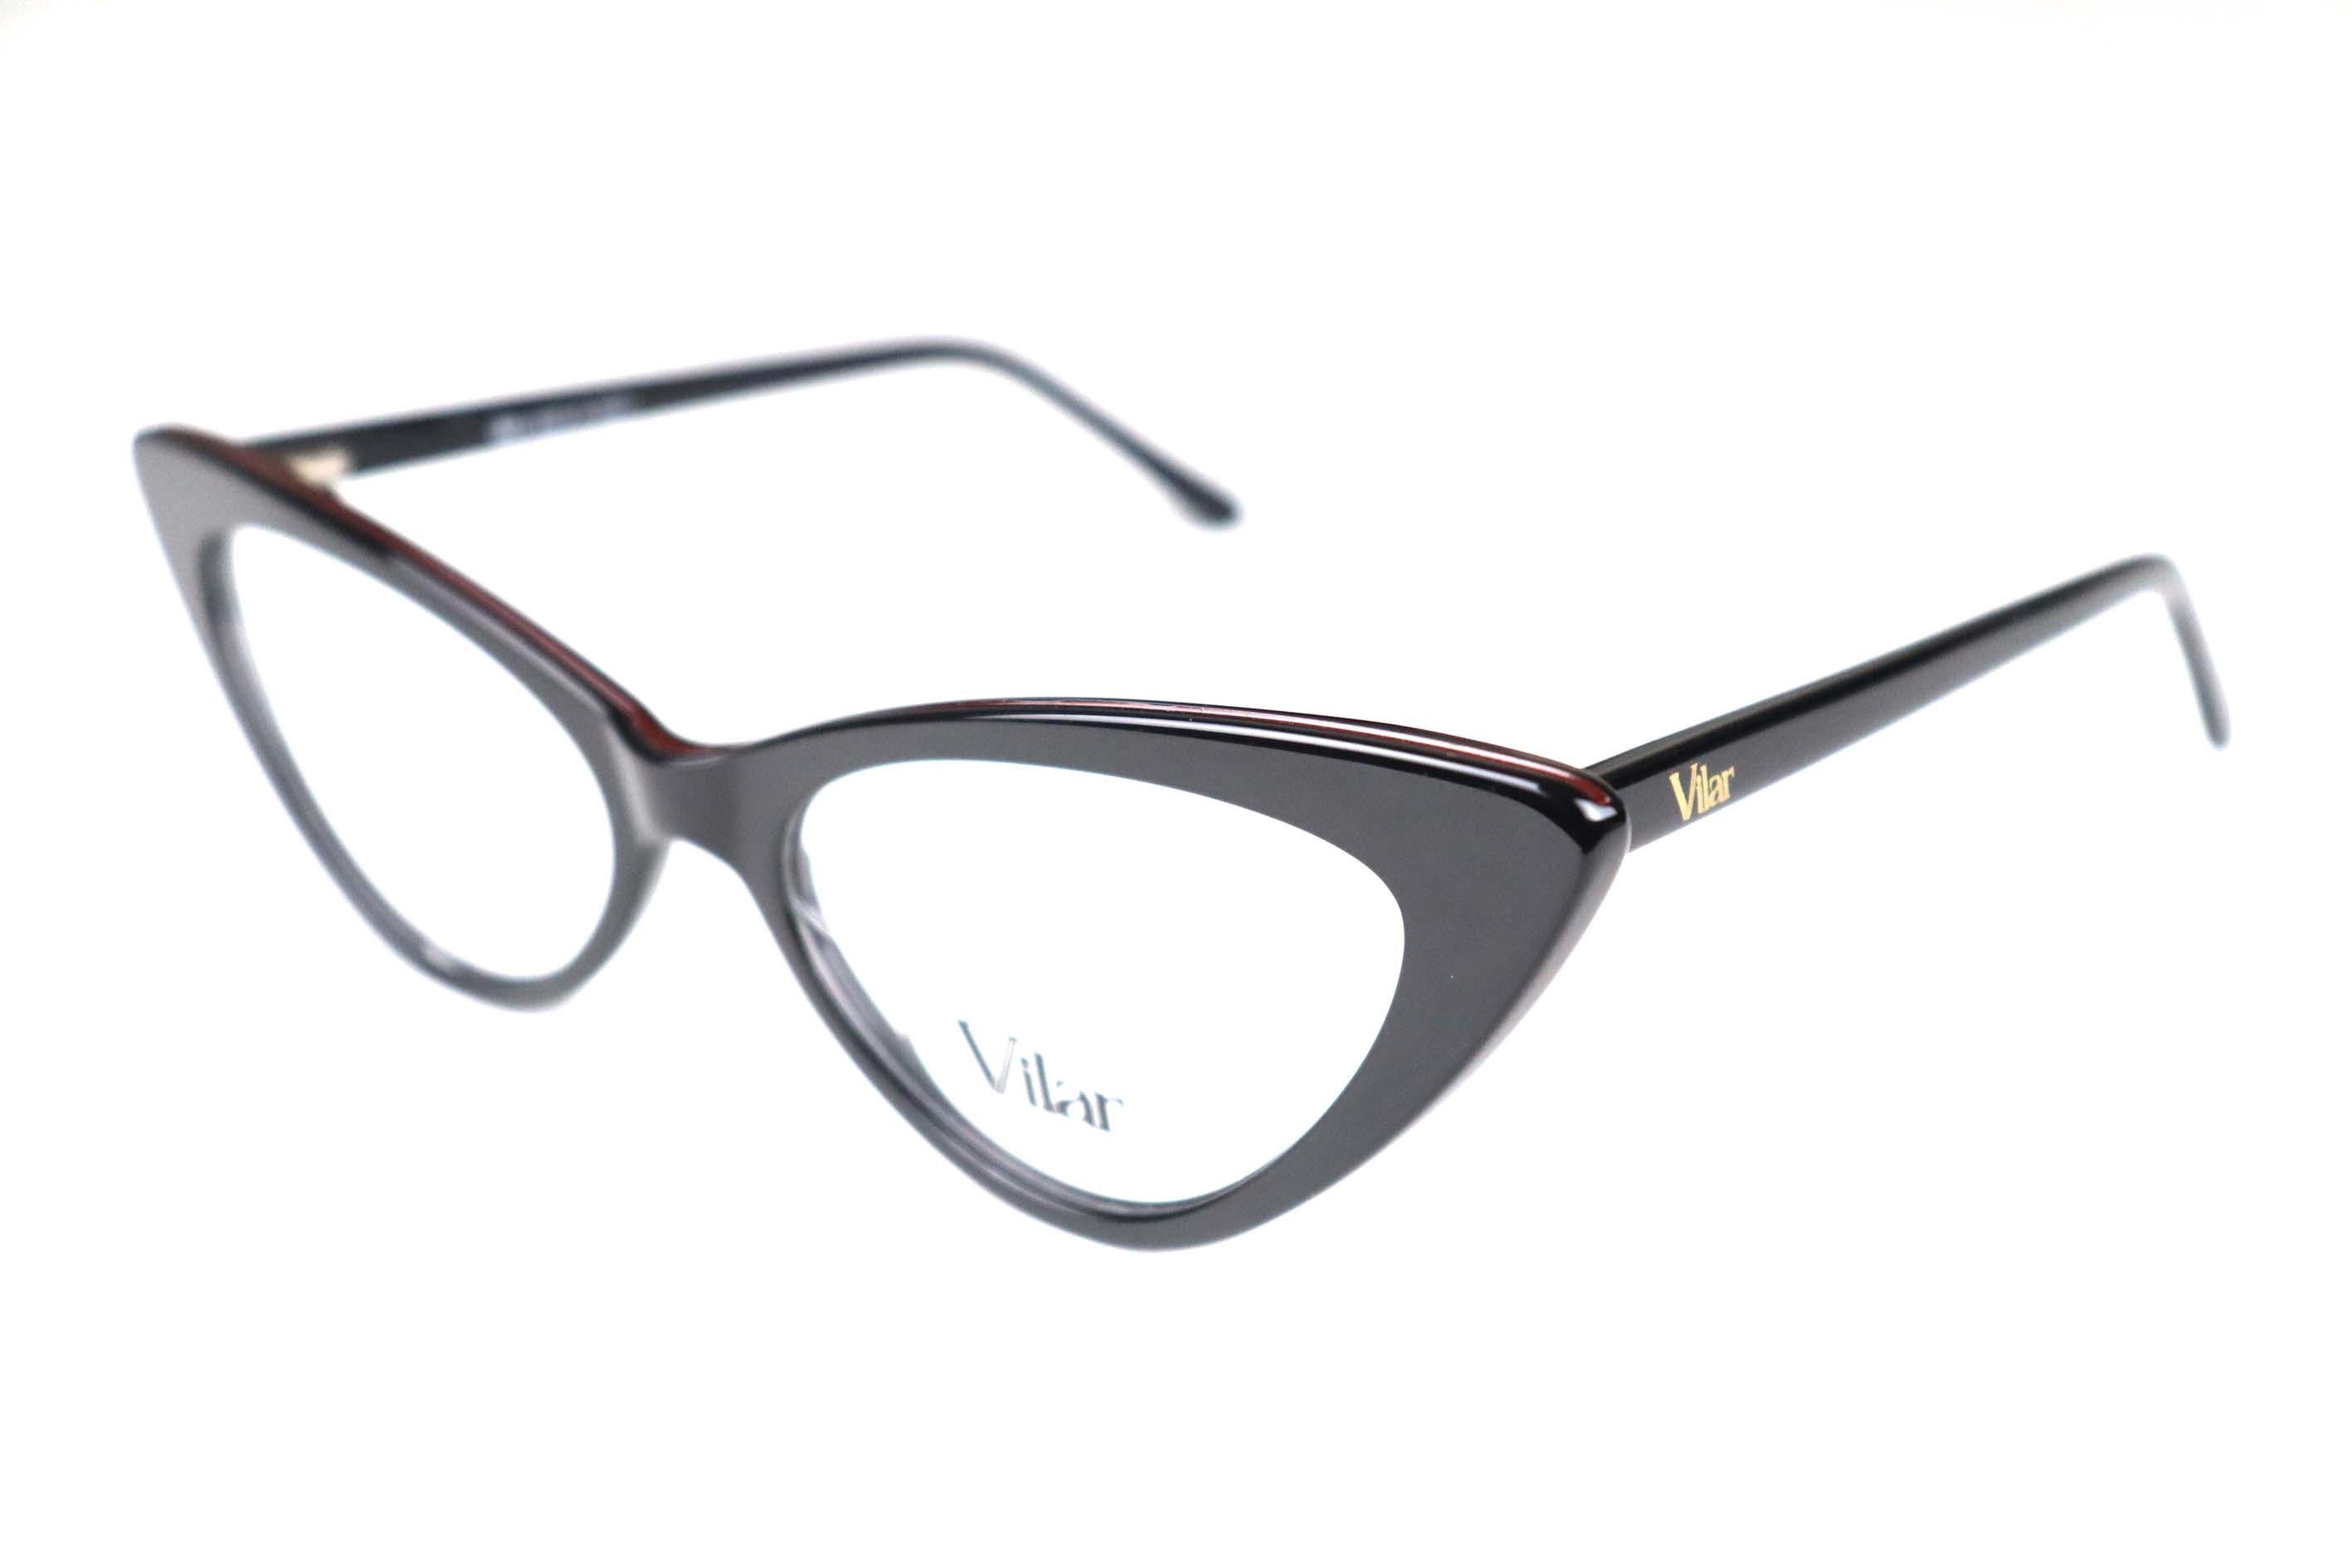 Vilar Eyeglasses -F2151-53-18-140